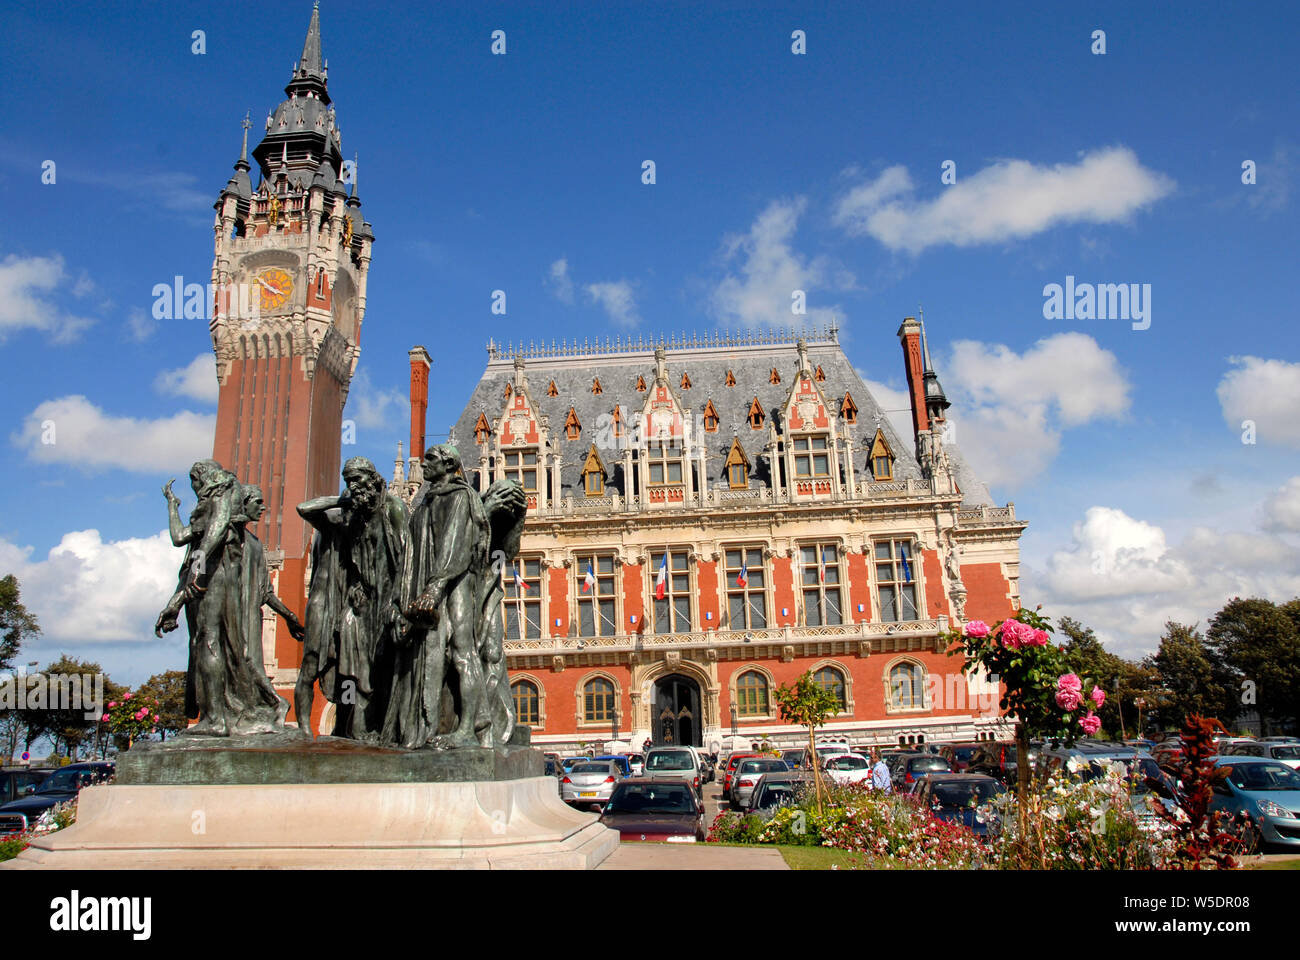 Die Bürger von Calais, Bronze von Rodin vor dem Rathaus, Calais, Frankreich Stockfoto